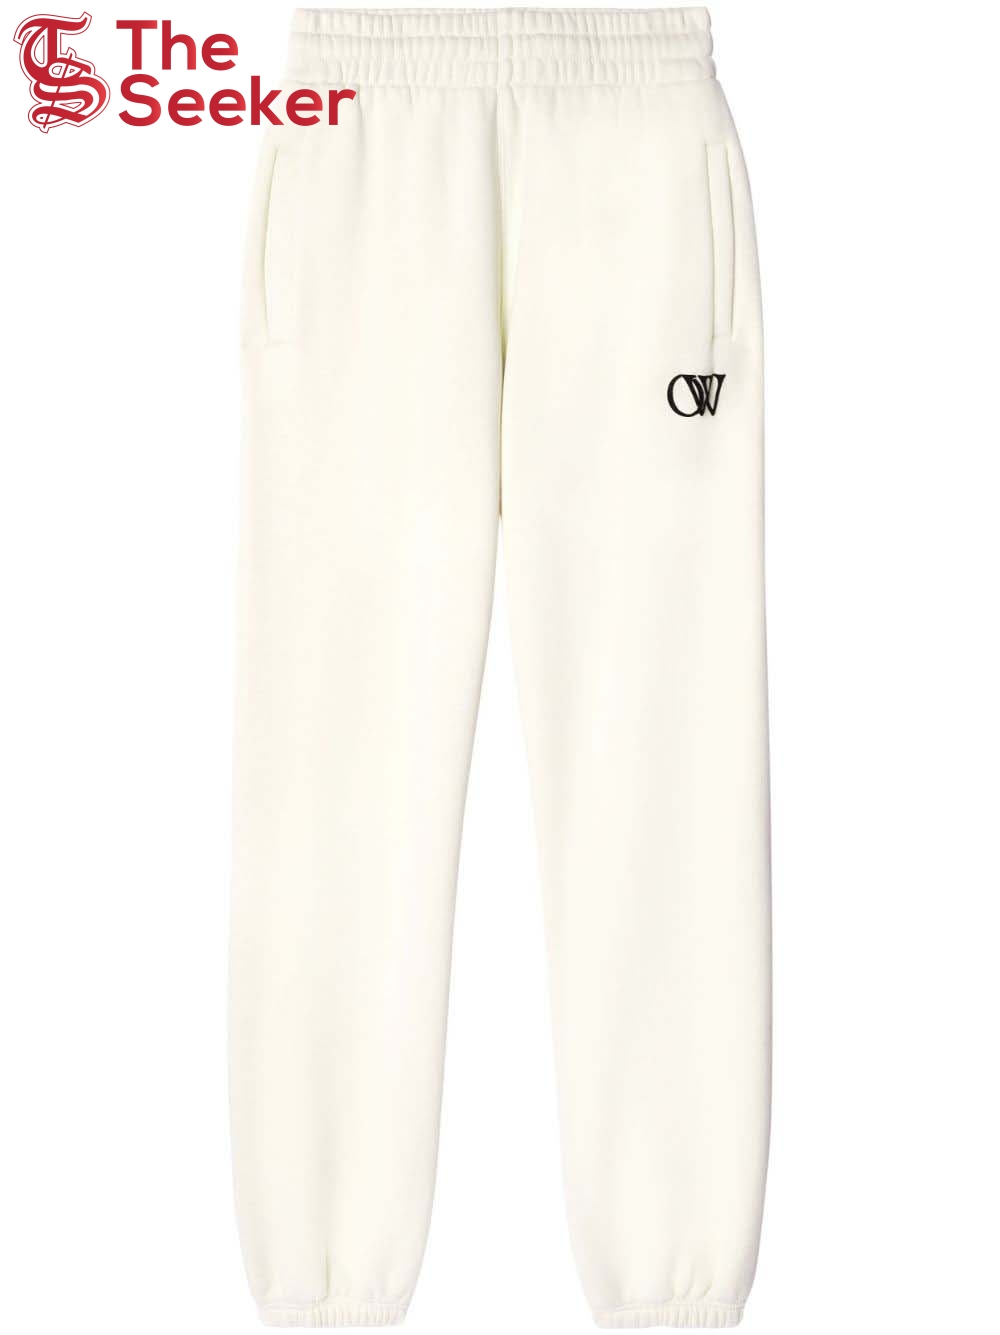 OFF-WHITE OW-Print Cotton Track Pants Cream White